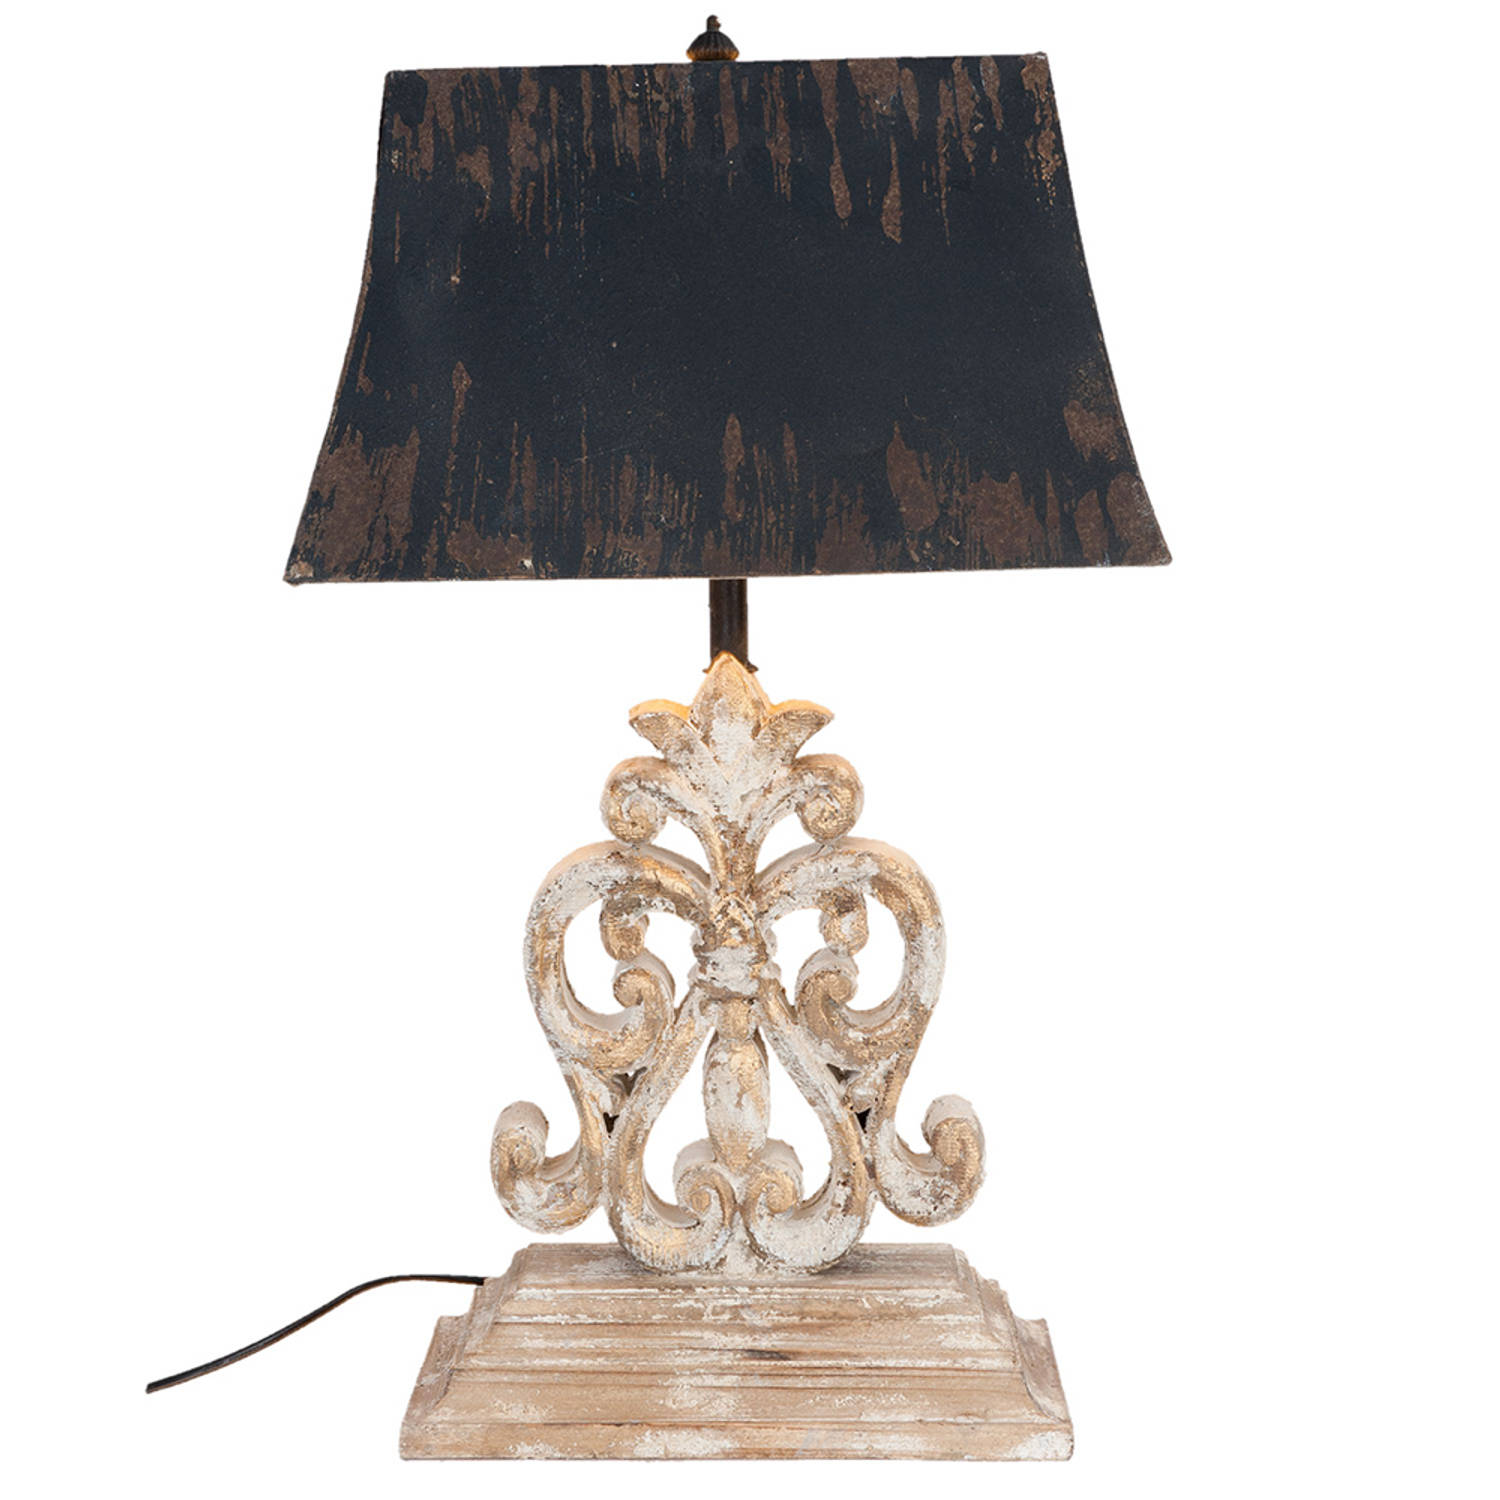 Haes Deco Tafellamp Shabby Chic Vintage-Retro Lamp, 40*28*67 Cm Bruin-wit Bureaulamp, Sfeerlamp, Nac